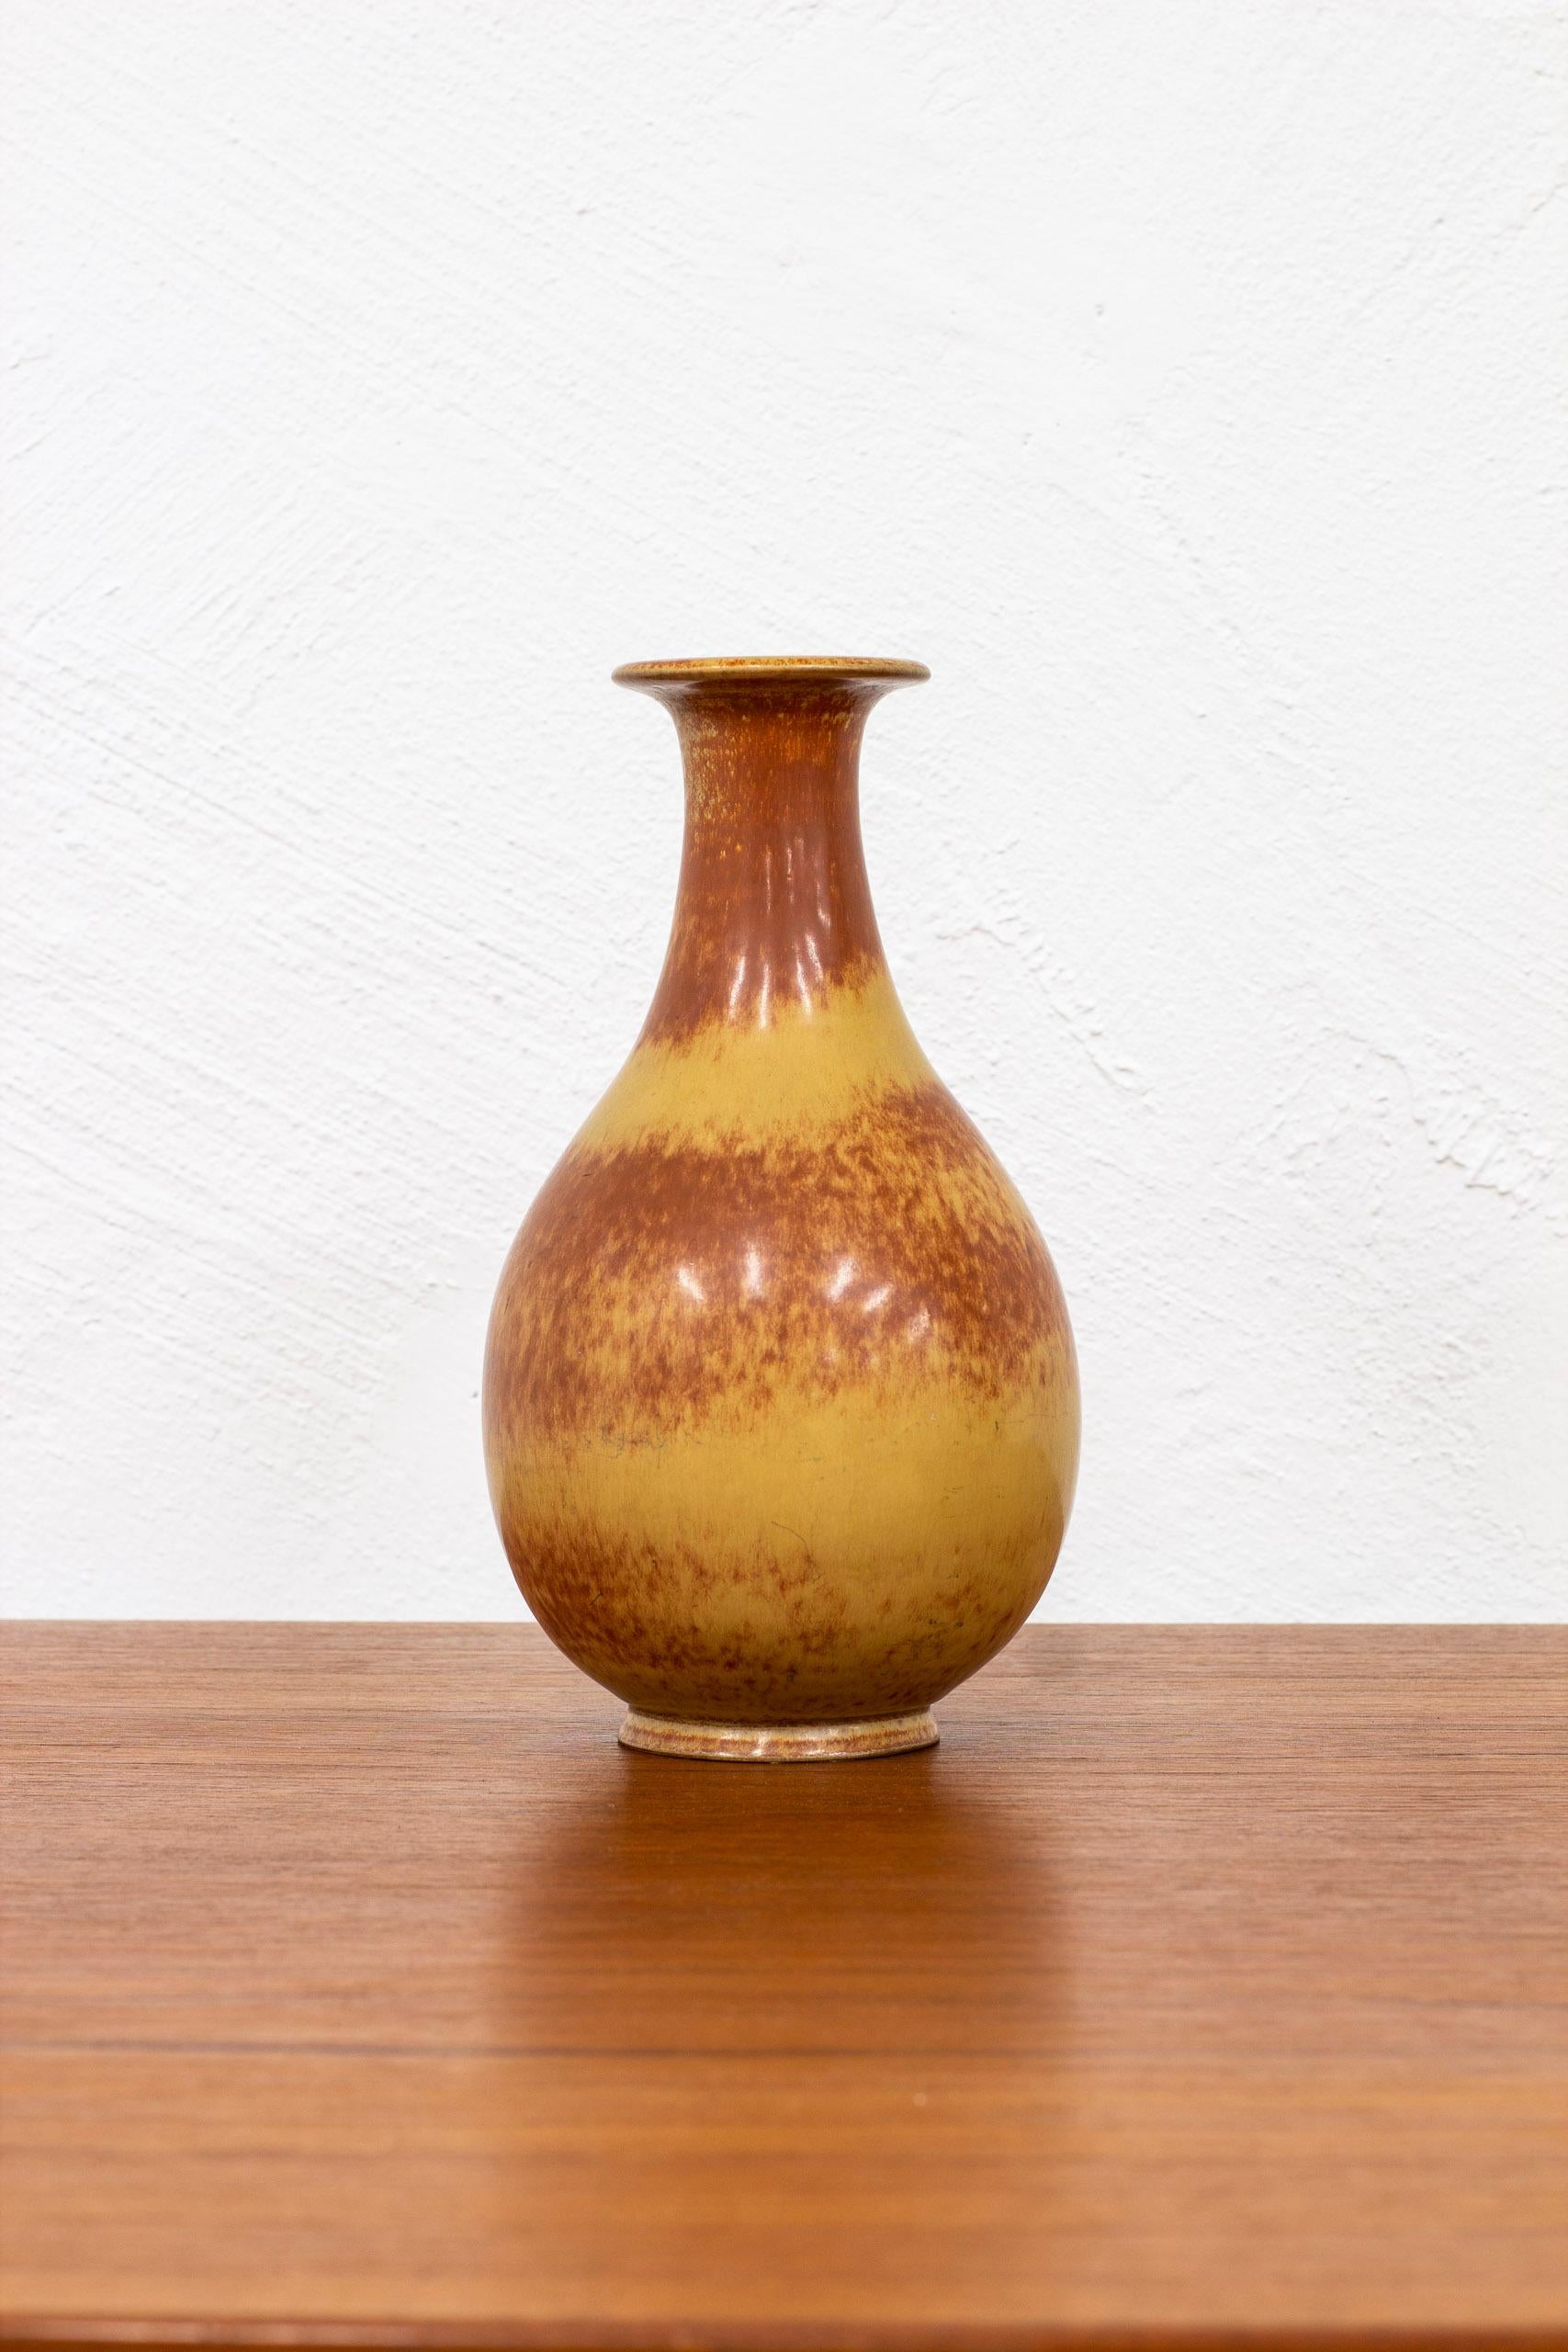 Vase en grès conçu par Gunnar Nylund. Fabriqué à la main à Rörstrand dans les années 1940. Glaçage avec des tons de brun brûlé. Très bon état vintage avec une légère usure et patine.

Dimensions : H. 24 Ø. 14 cm : H. 24 Ø. 14 cm.

